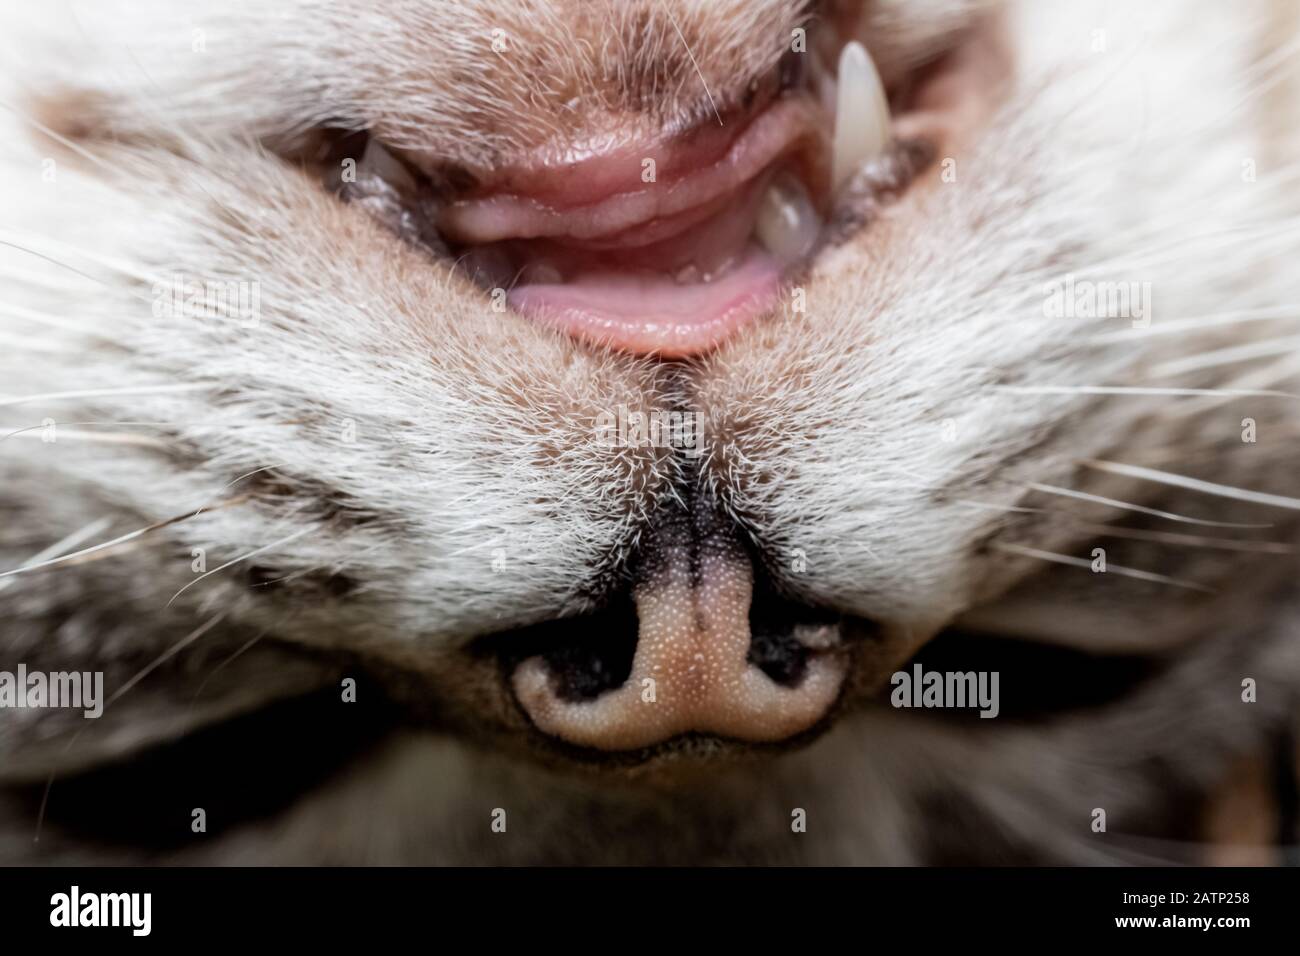 Mauvaises dents dans la bouche du chat, soins vétérinaires Banque D'Images